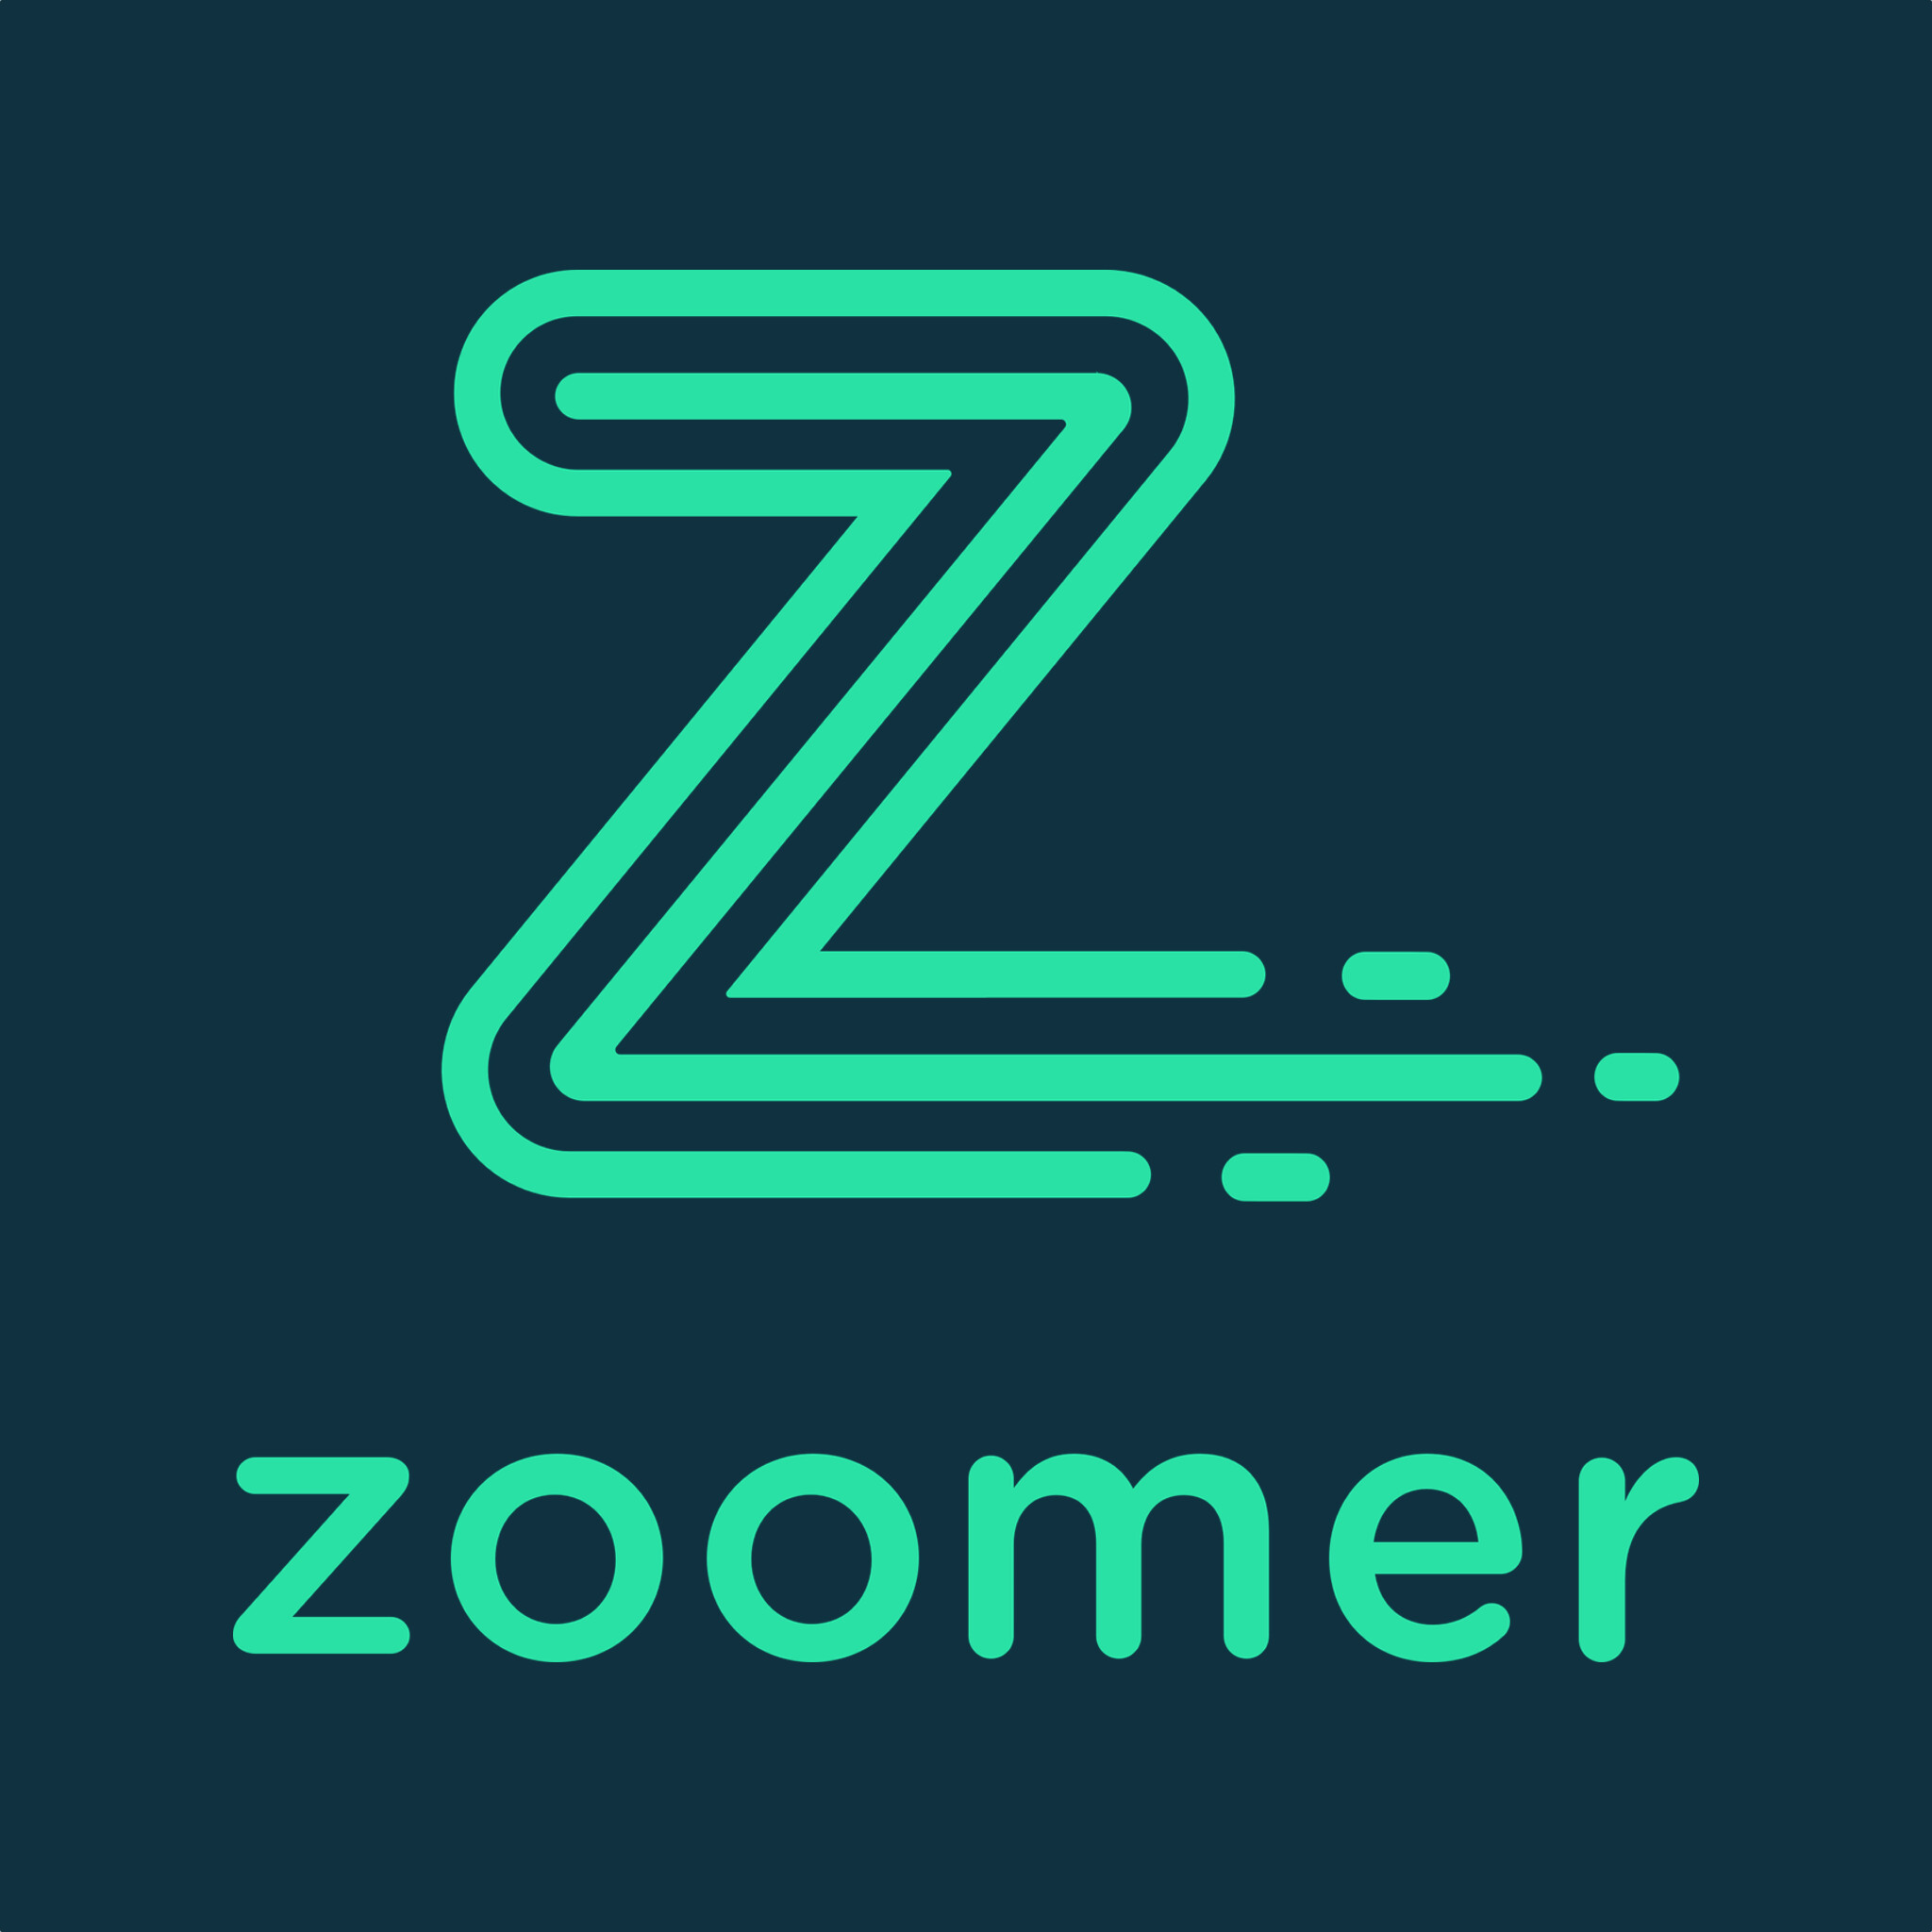 Zoomer